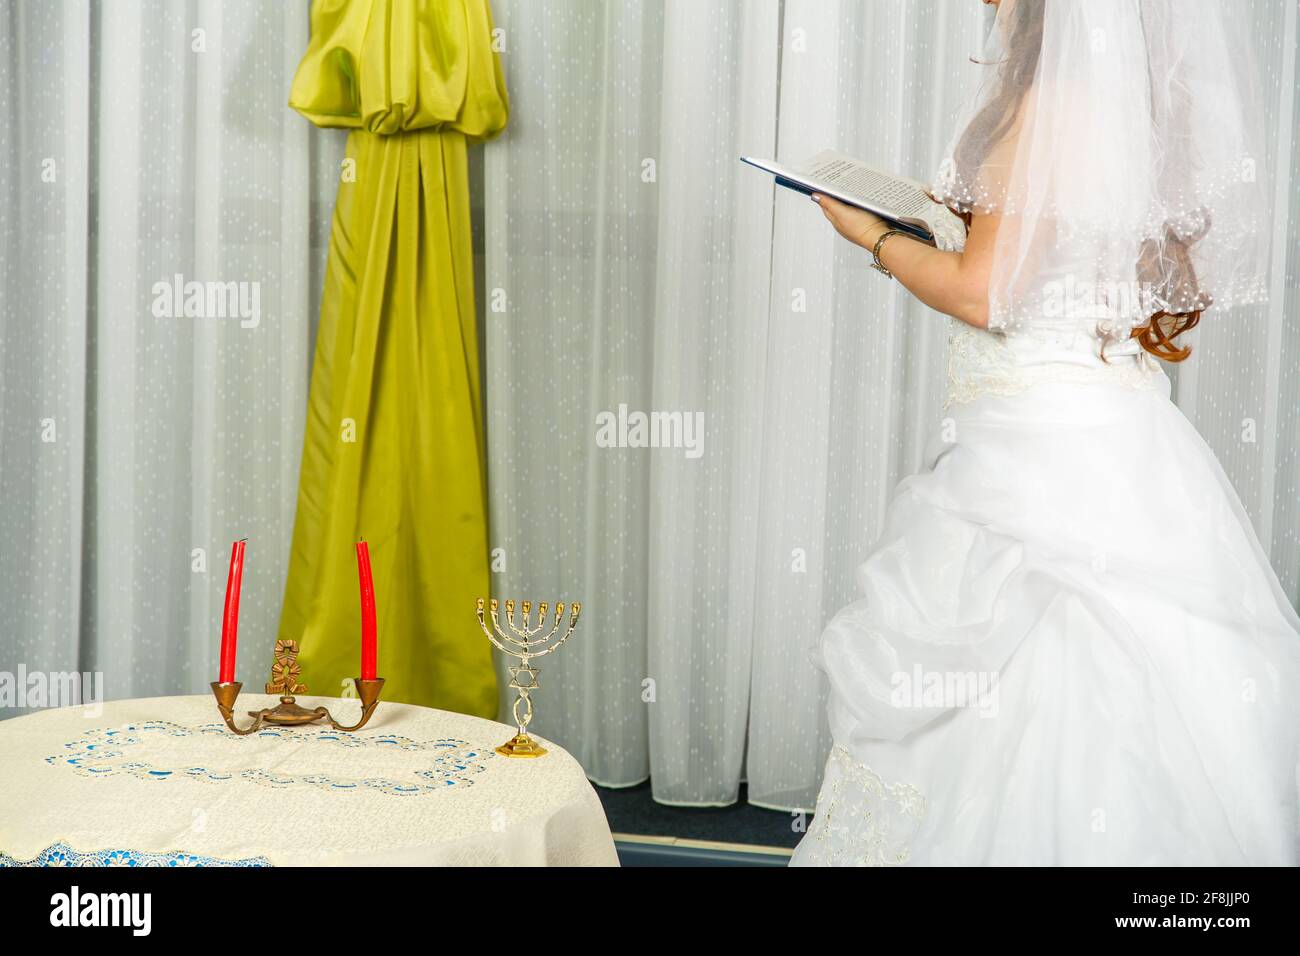 Una novia judía está junto a la ventana delante de la Hupa ceremonia en matrimonio Foto de stock